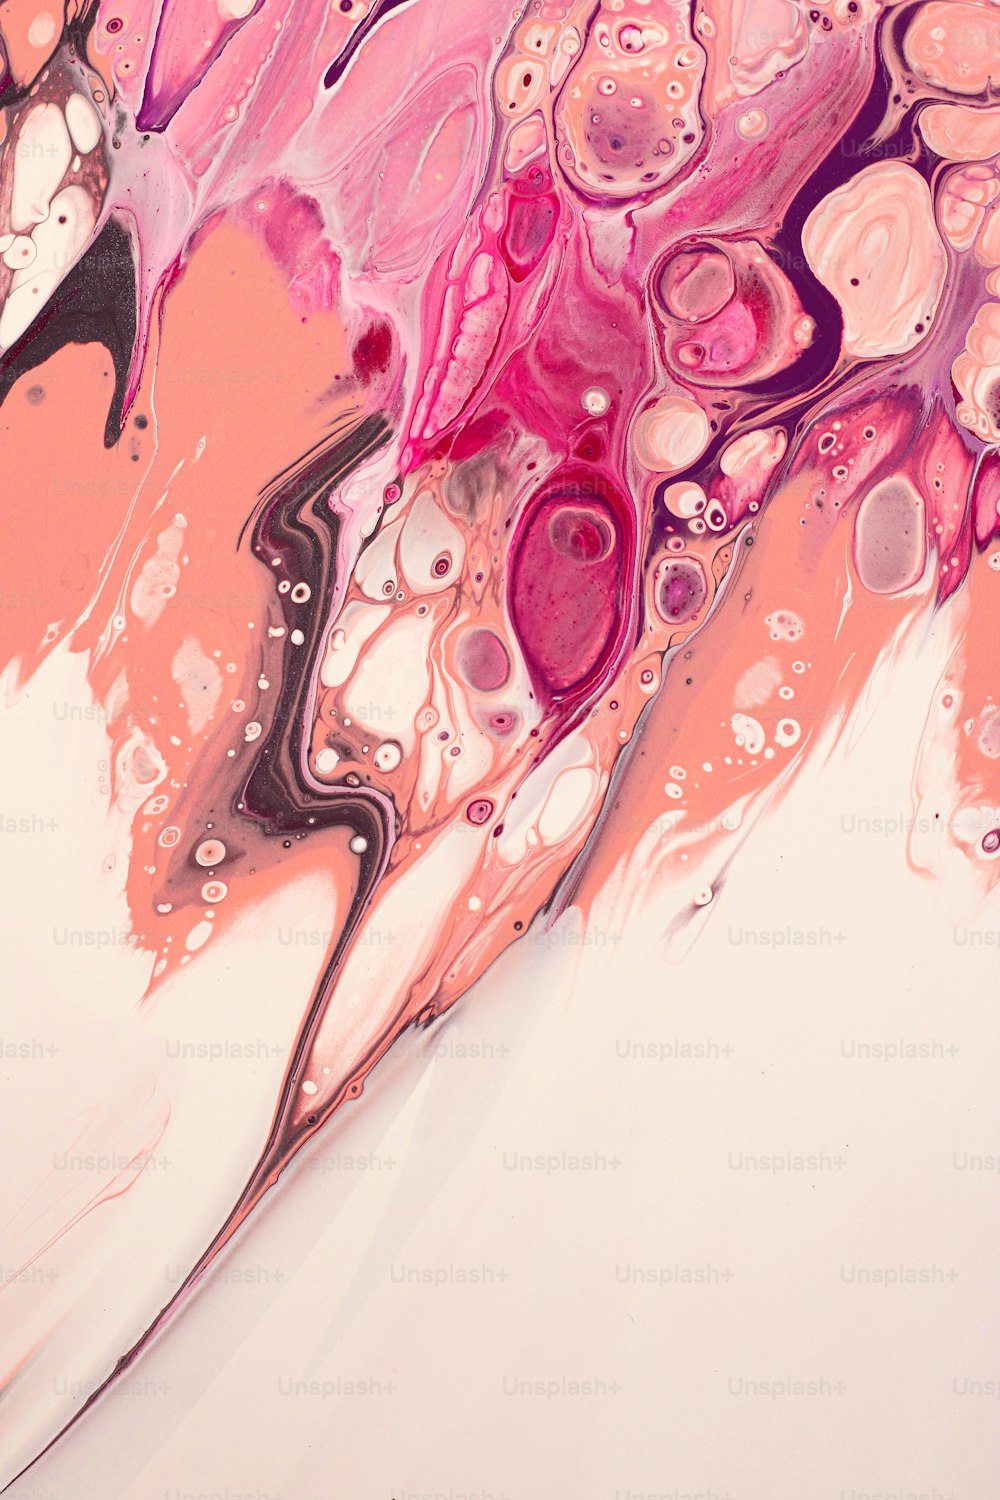 Un dipinto astratto con colori rosa e viola